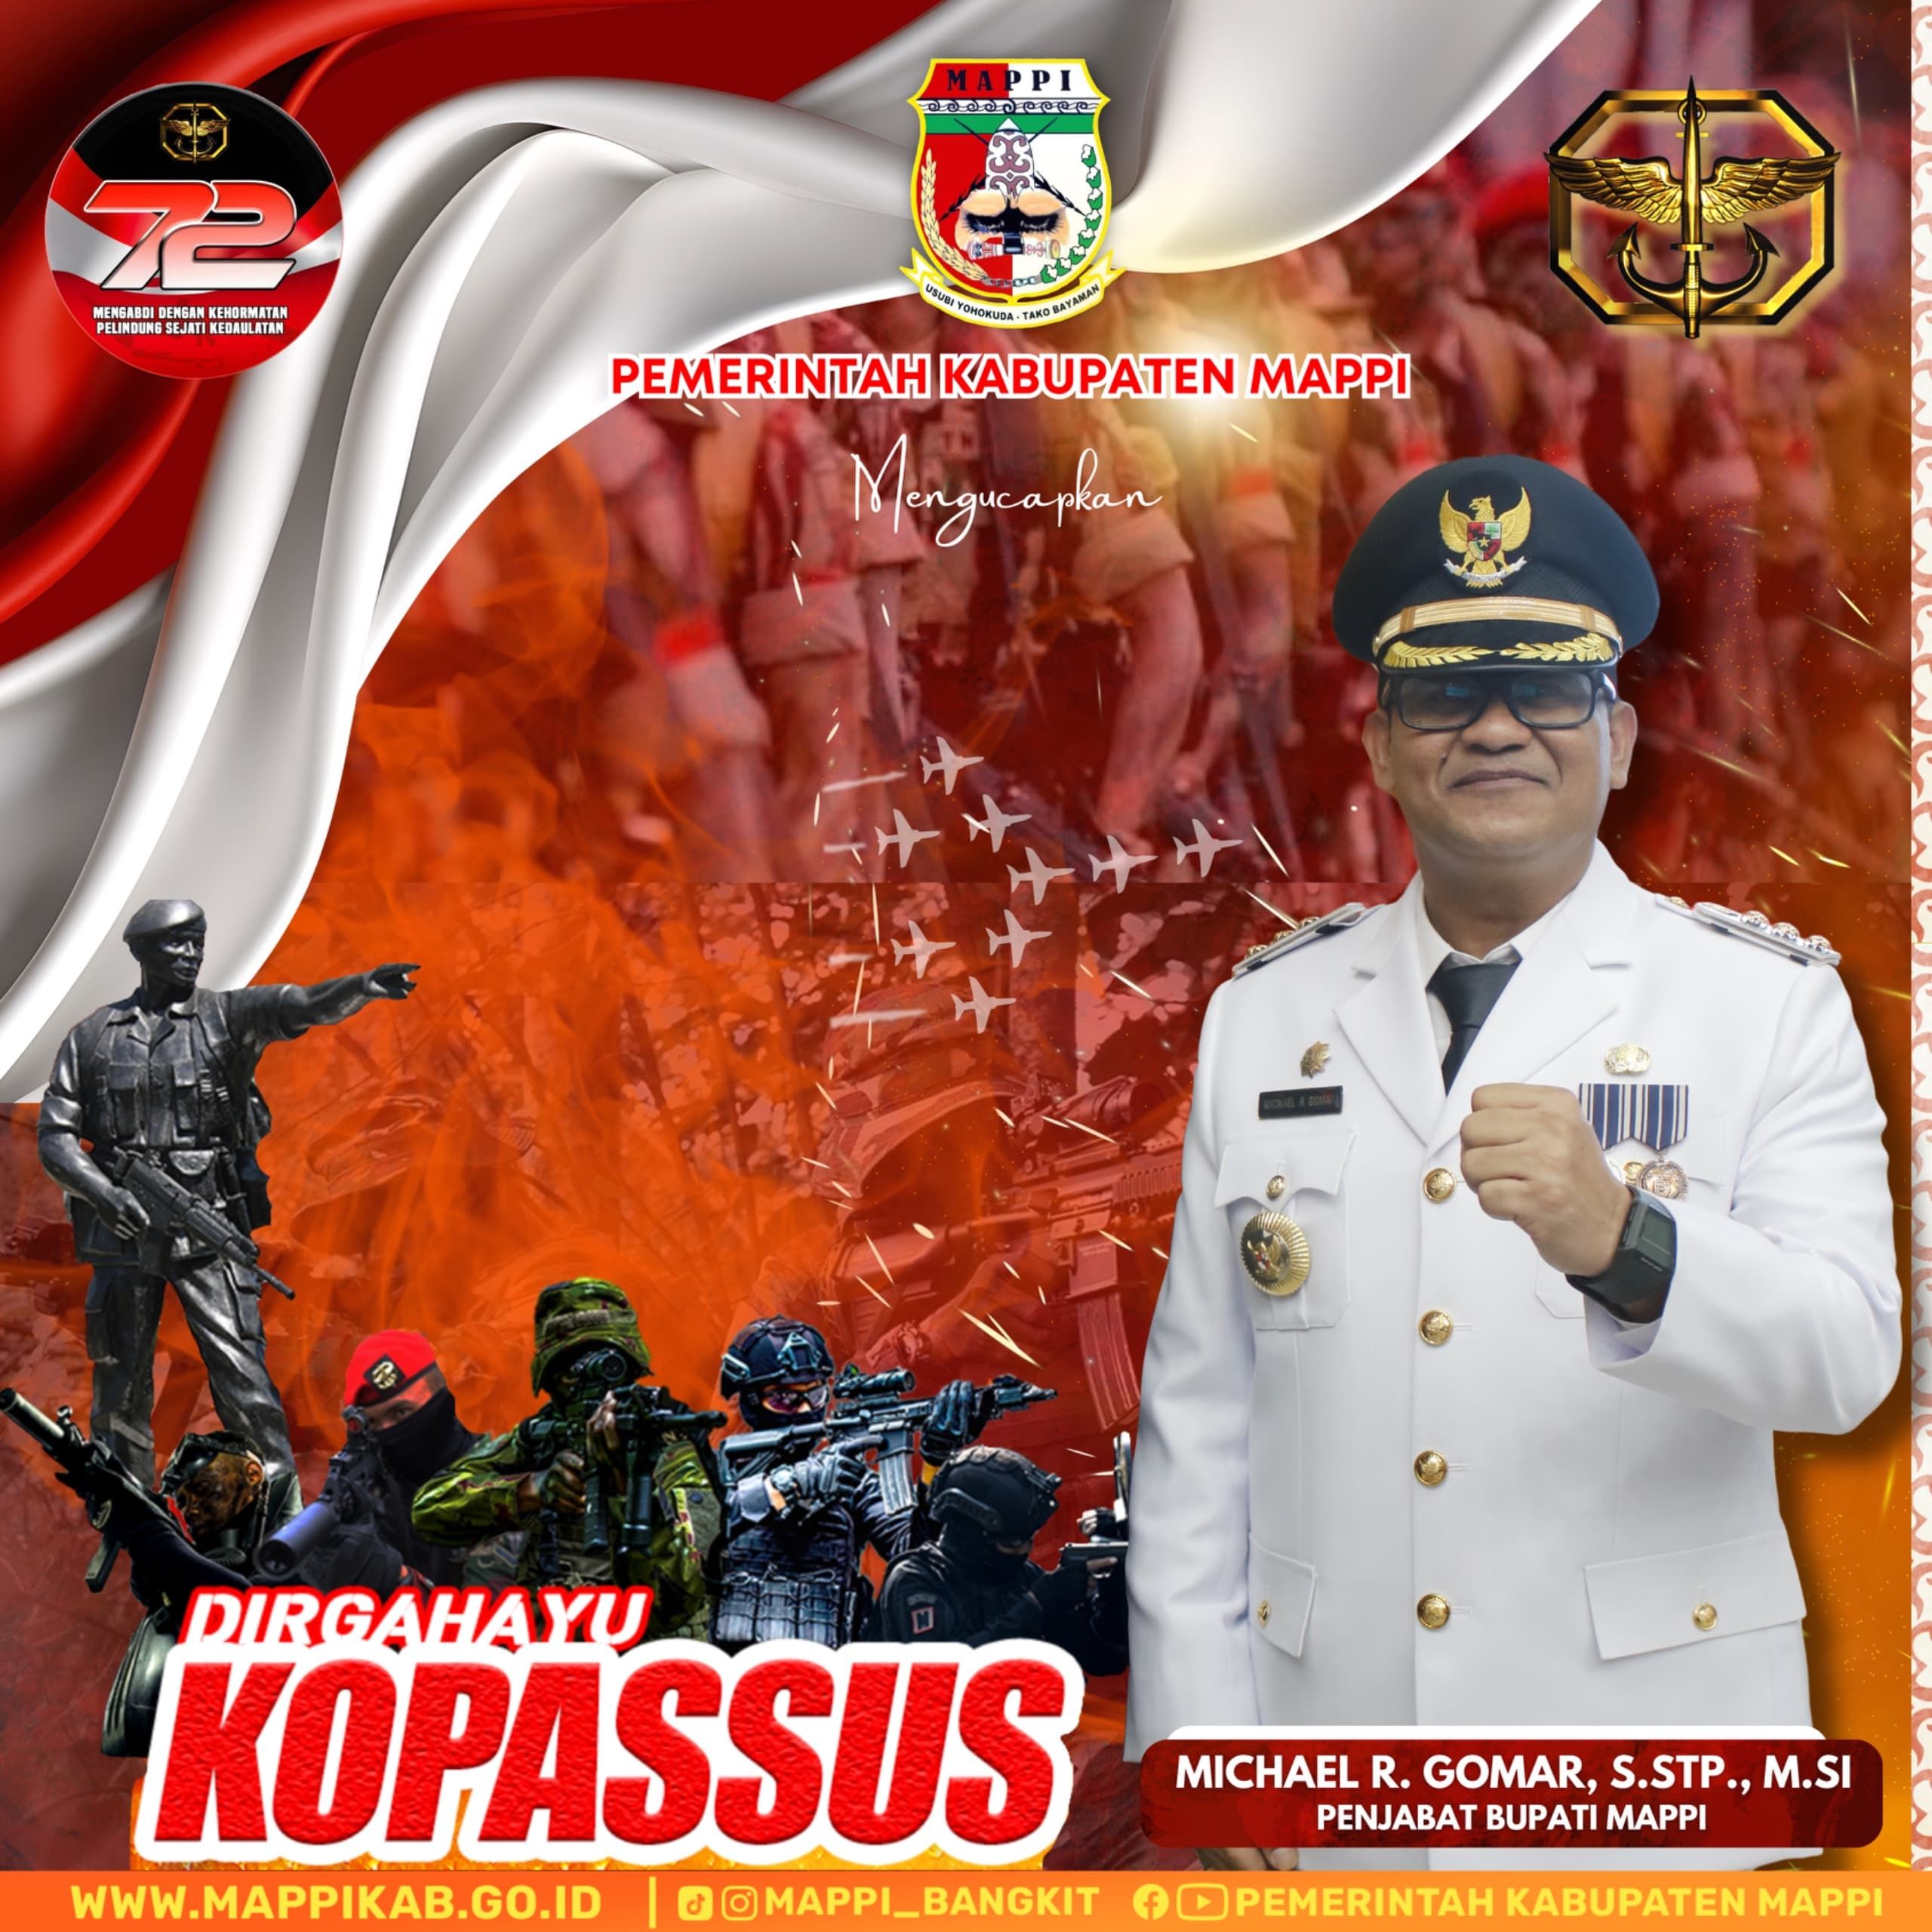 Pemerintah Kabupaten Mappi Sampaikan Selamat Hari Jadi Kopassus Indonesia.